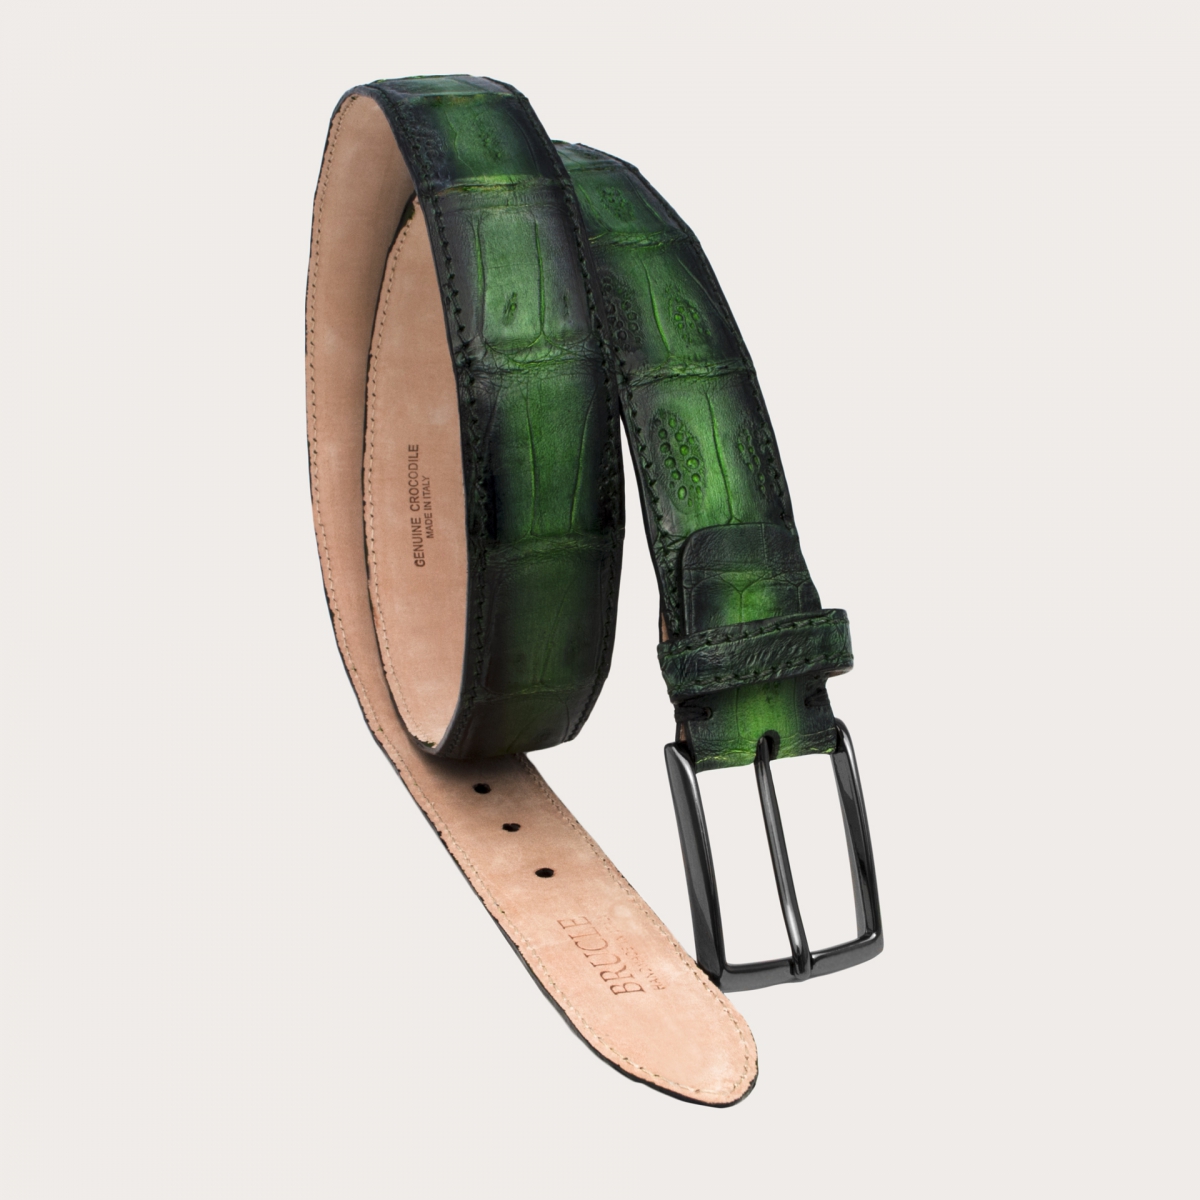 BRUCLE Eleganter Gürtel aus nickelfreiem Krokodilleder mit grün schattierter Patina